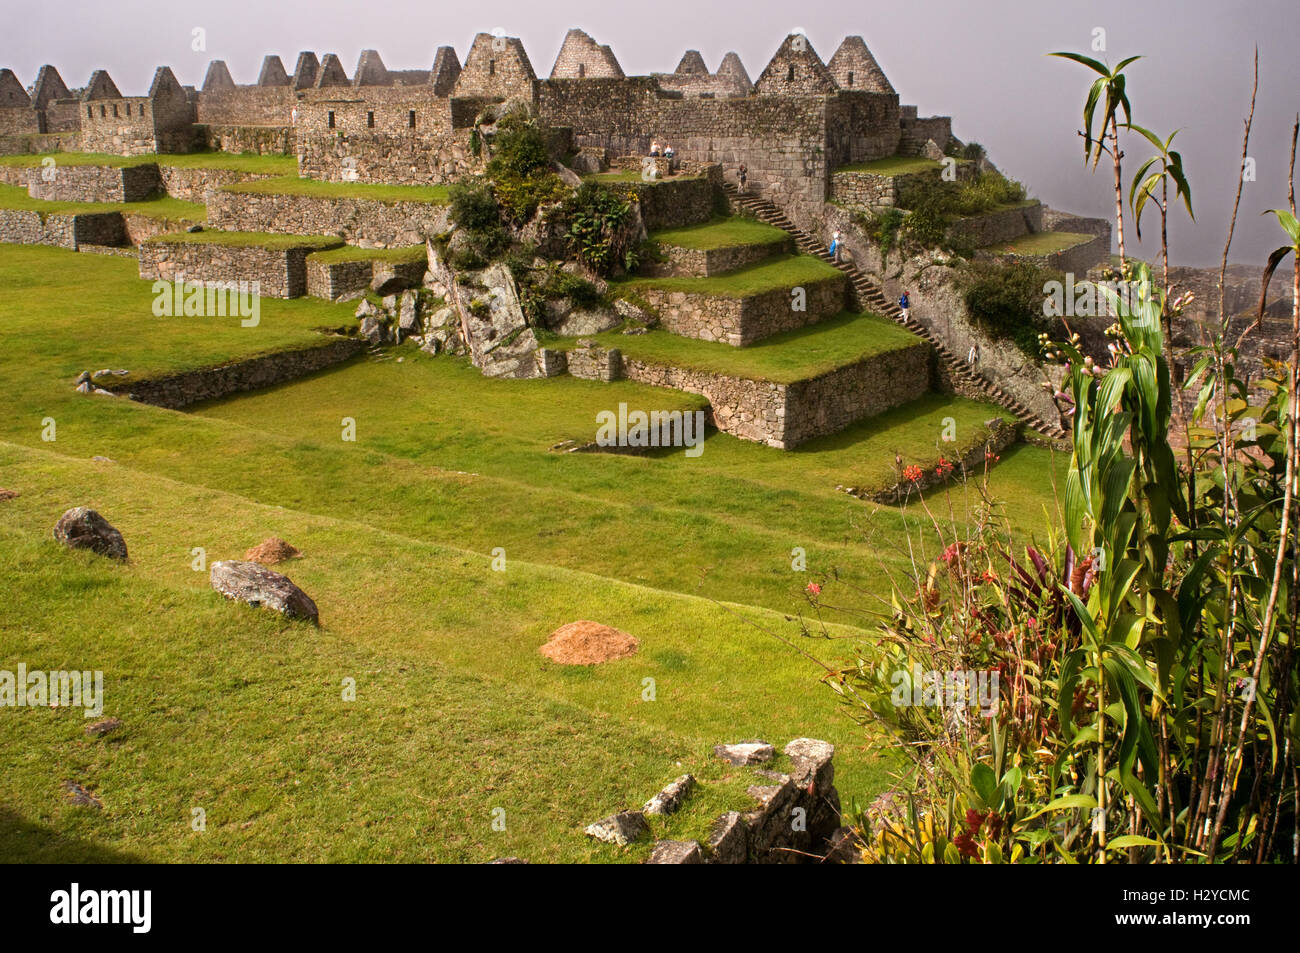 L'intérieur du complexe archéologique de Machu Picchu. Machu Picchu est une ville située dans la cordillère des Andes, au Pérou moderne. Il Banque D'Images